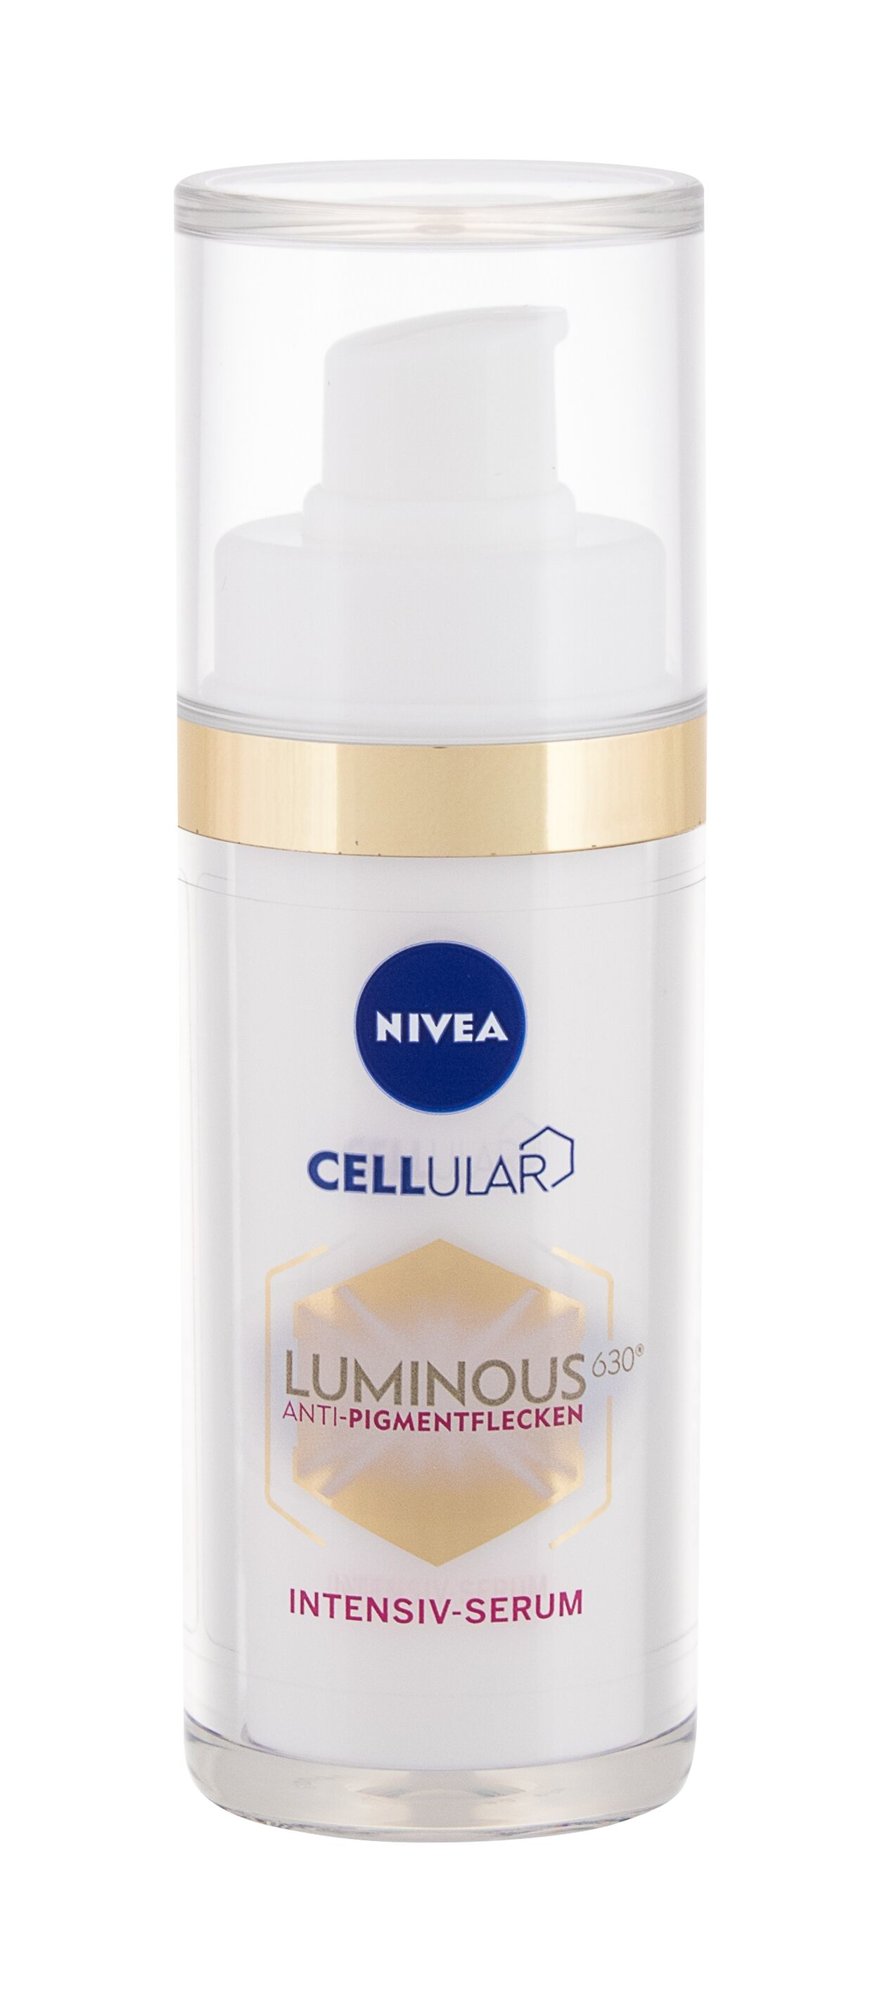 Nivea Cellular Luminous 630 Antispot 30ml Veido serumas